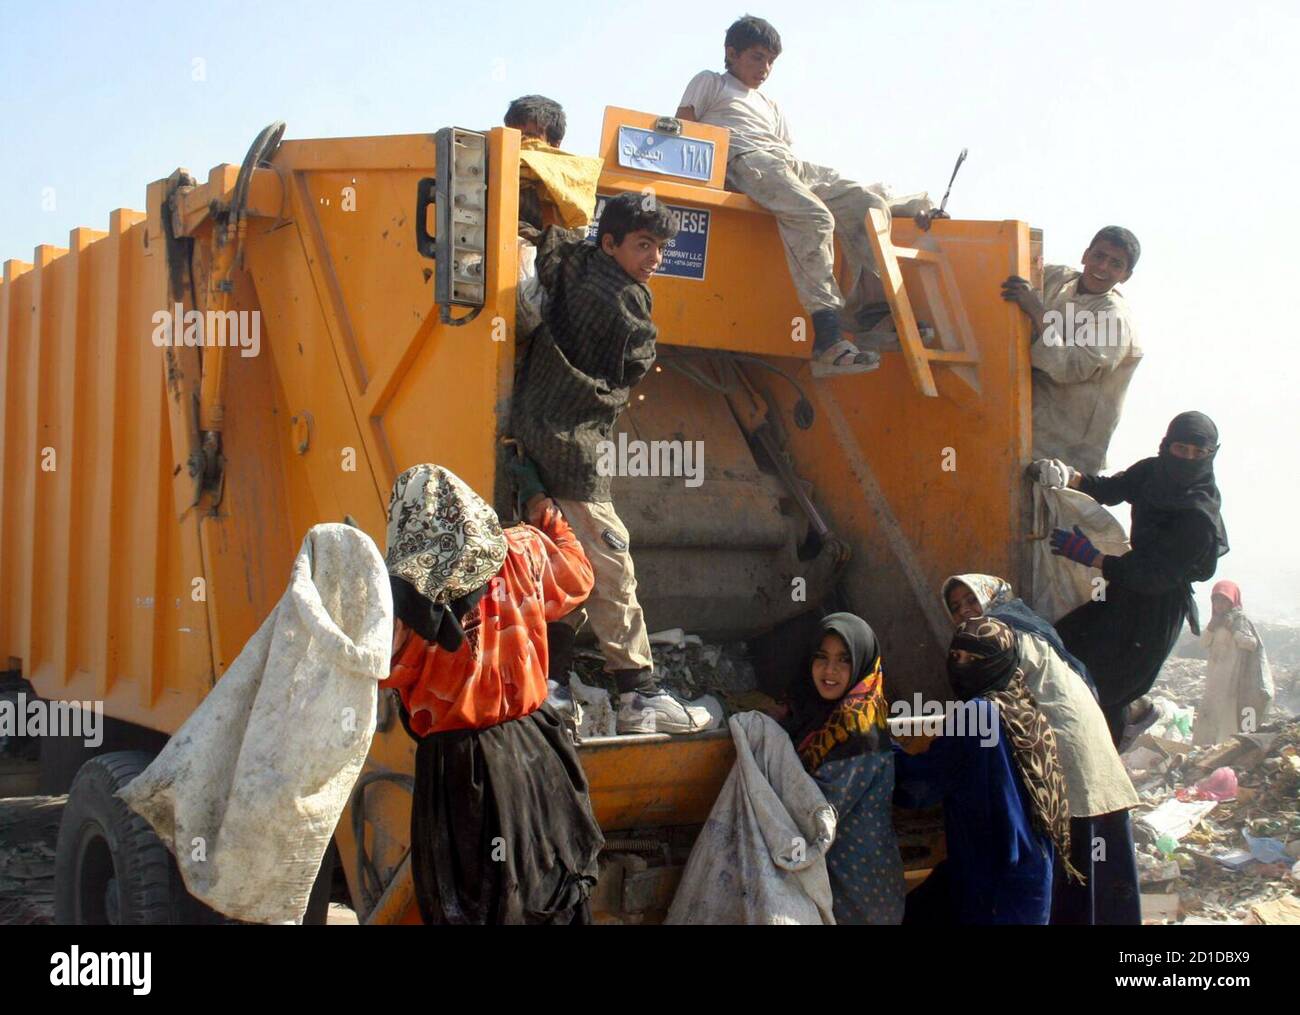 Los niños iraquíes se apresuran a solucionar un nuevo camión de basura en un vertedero en la ciudad iraquí meridional de Najaf el 15 de noviembre de 2005. El desempleo es alto y el derramamiento de sangre está alejando a los inversores de la maltrecha economía de Irak, obligando a algunos iraquíes a salir de la existencia echando basura para buscar restos de alimentos. Fotografía tomada el 15 de noviembre de 2005. REUTERS/Ali Abu Shish Foto de stock